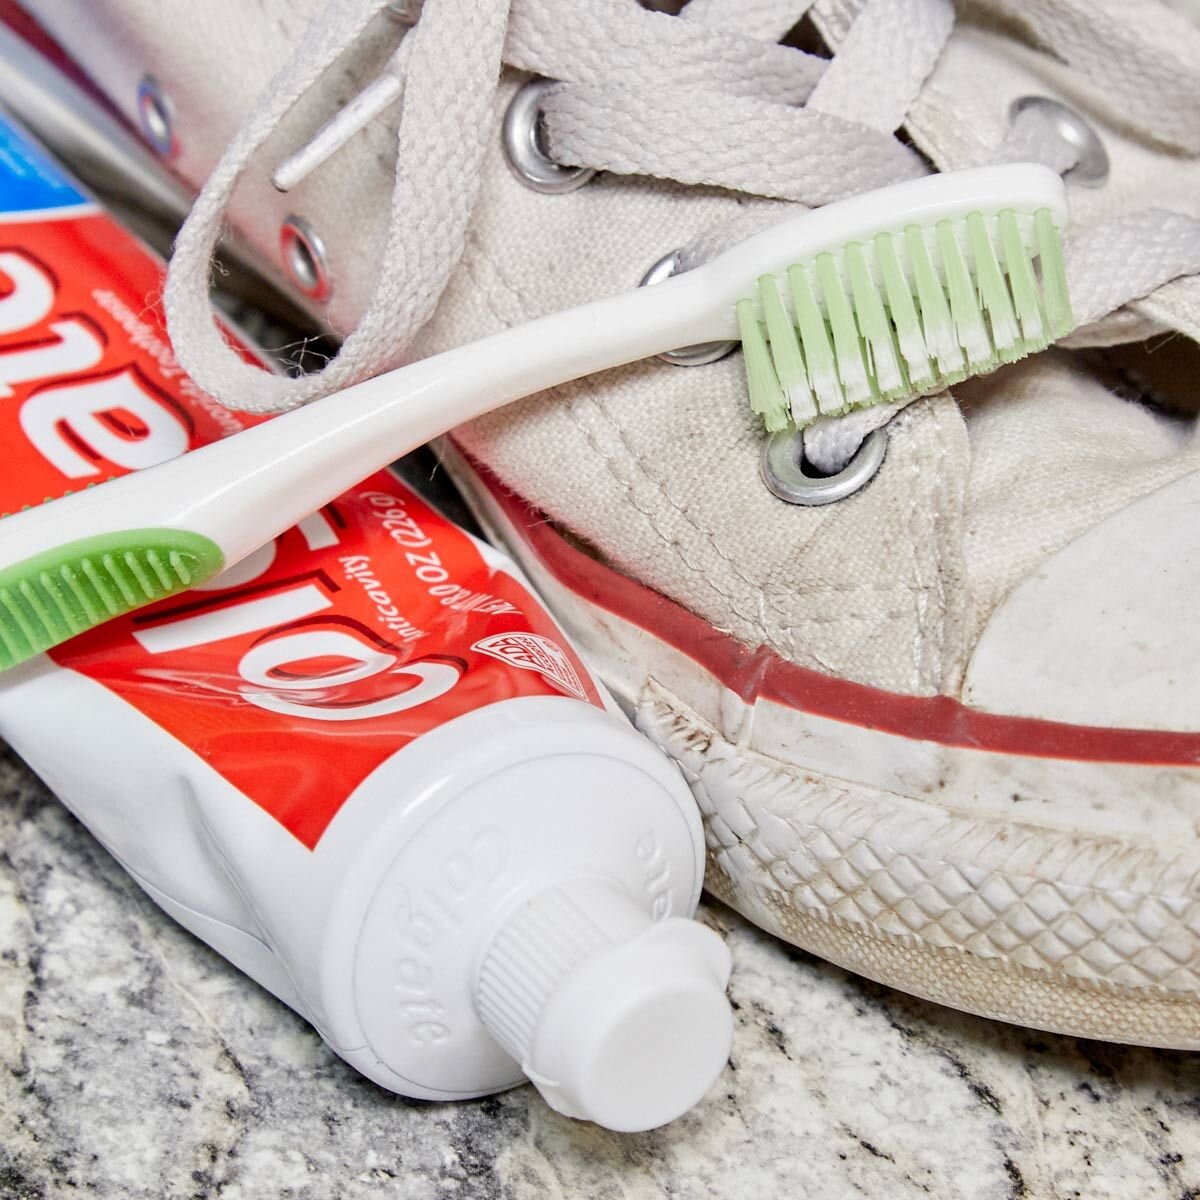 Как отмыть белизну. Зубная паста для кроссовок. Чистка кроссовок зубной пастой. Зубная паста для белой обуви. Паста для очистки подошвы кроссовок.